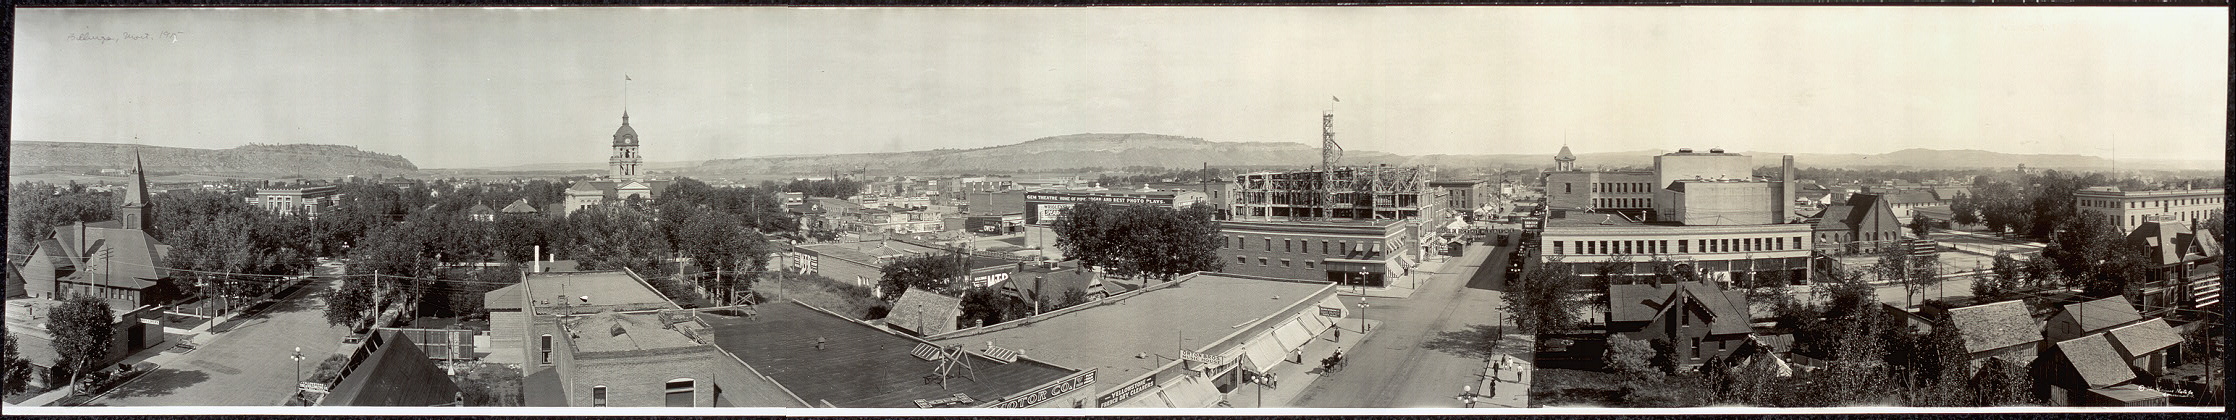 Billings, MT in 1915